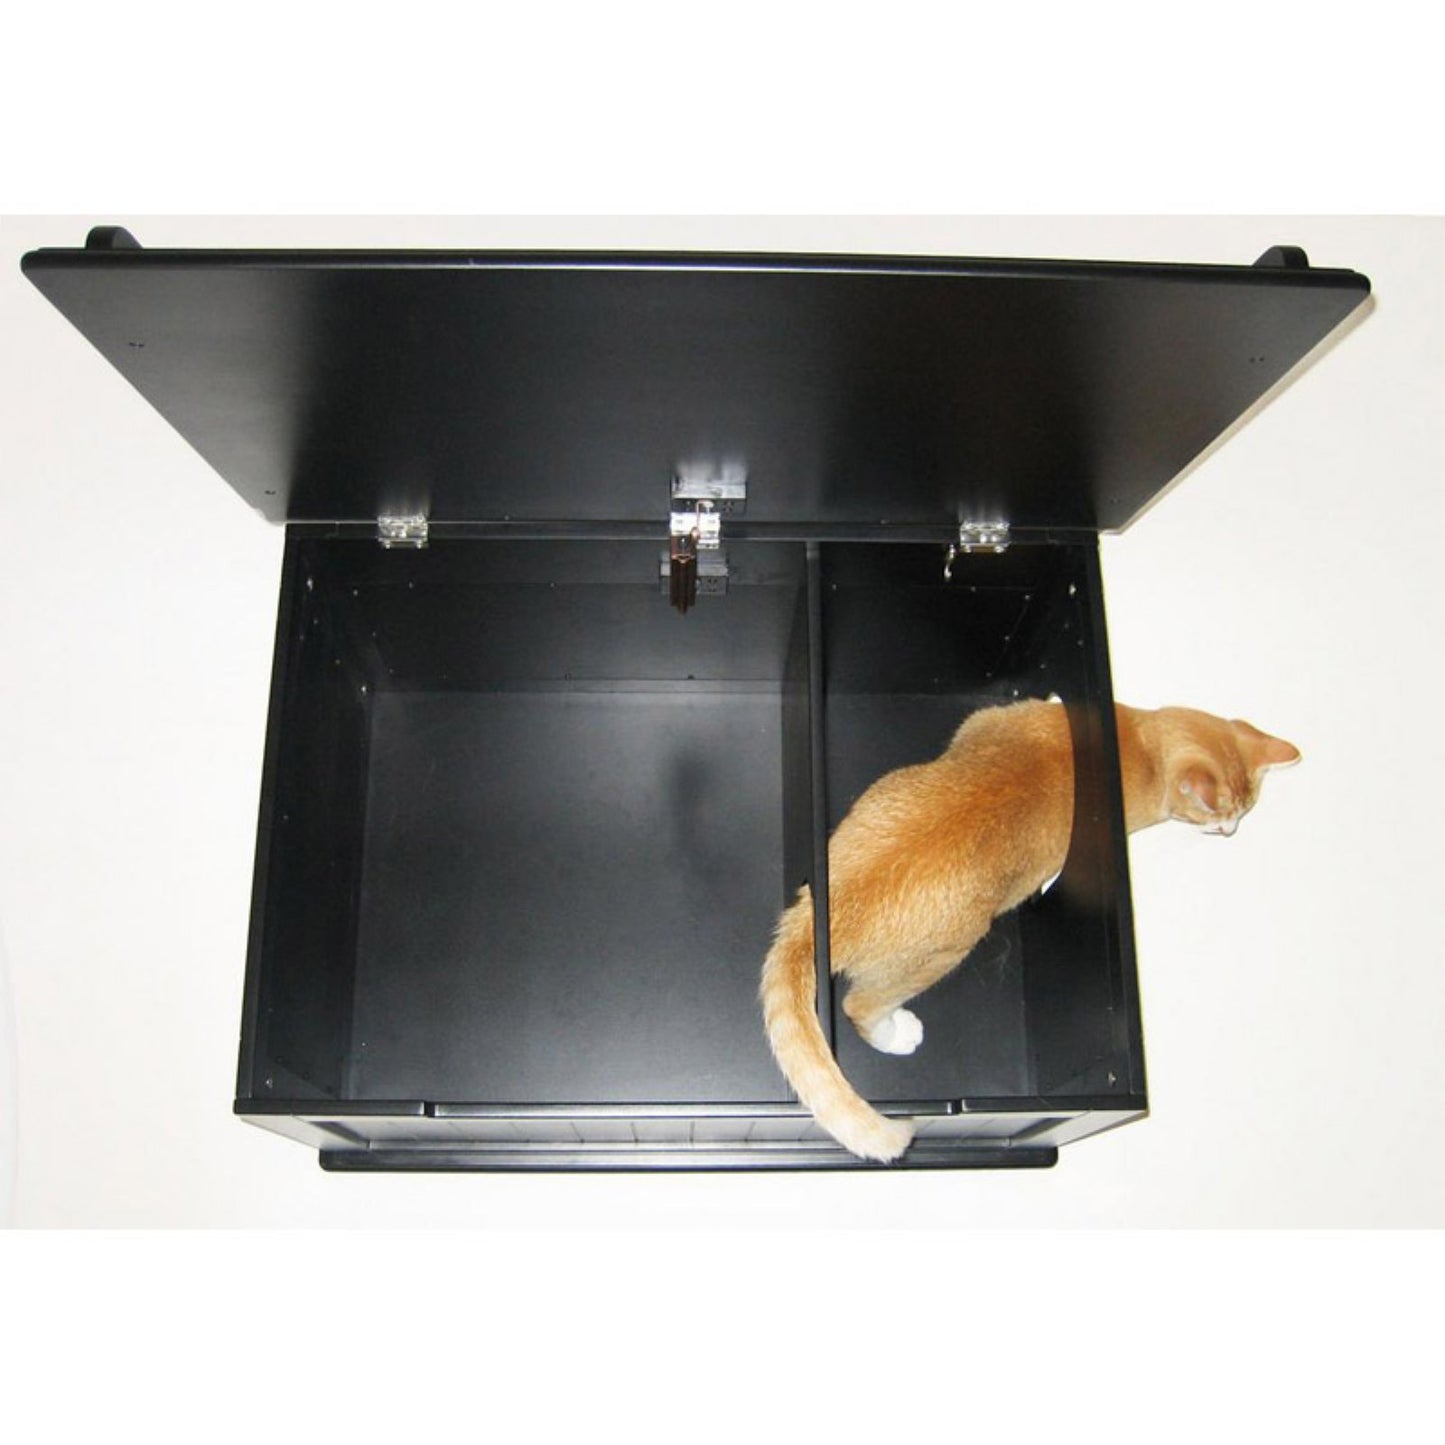 Designer Catbox Litter Box Enclosure Animals & Pet Supplies > Pet Supplies > Cat Supplies > Cat Furniture Designer Catbox LLC   